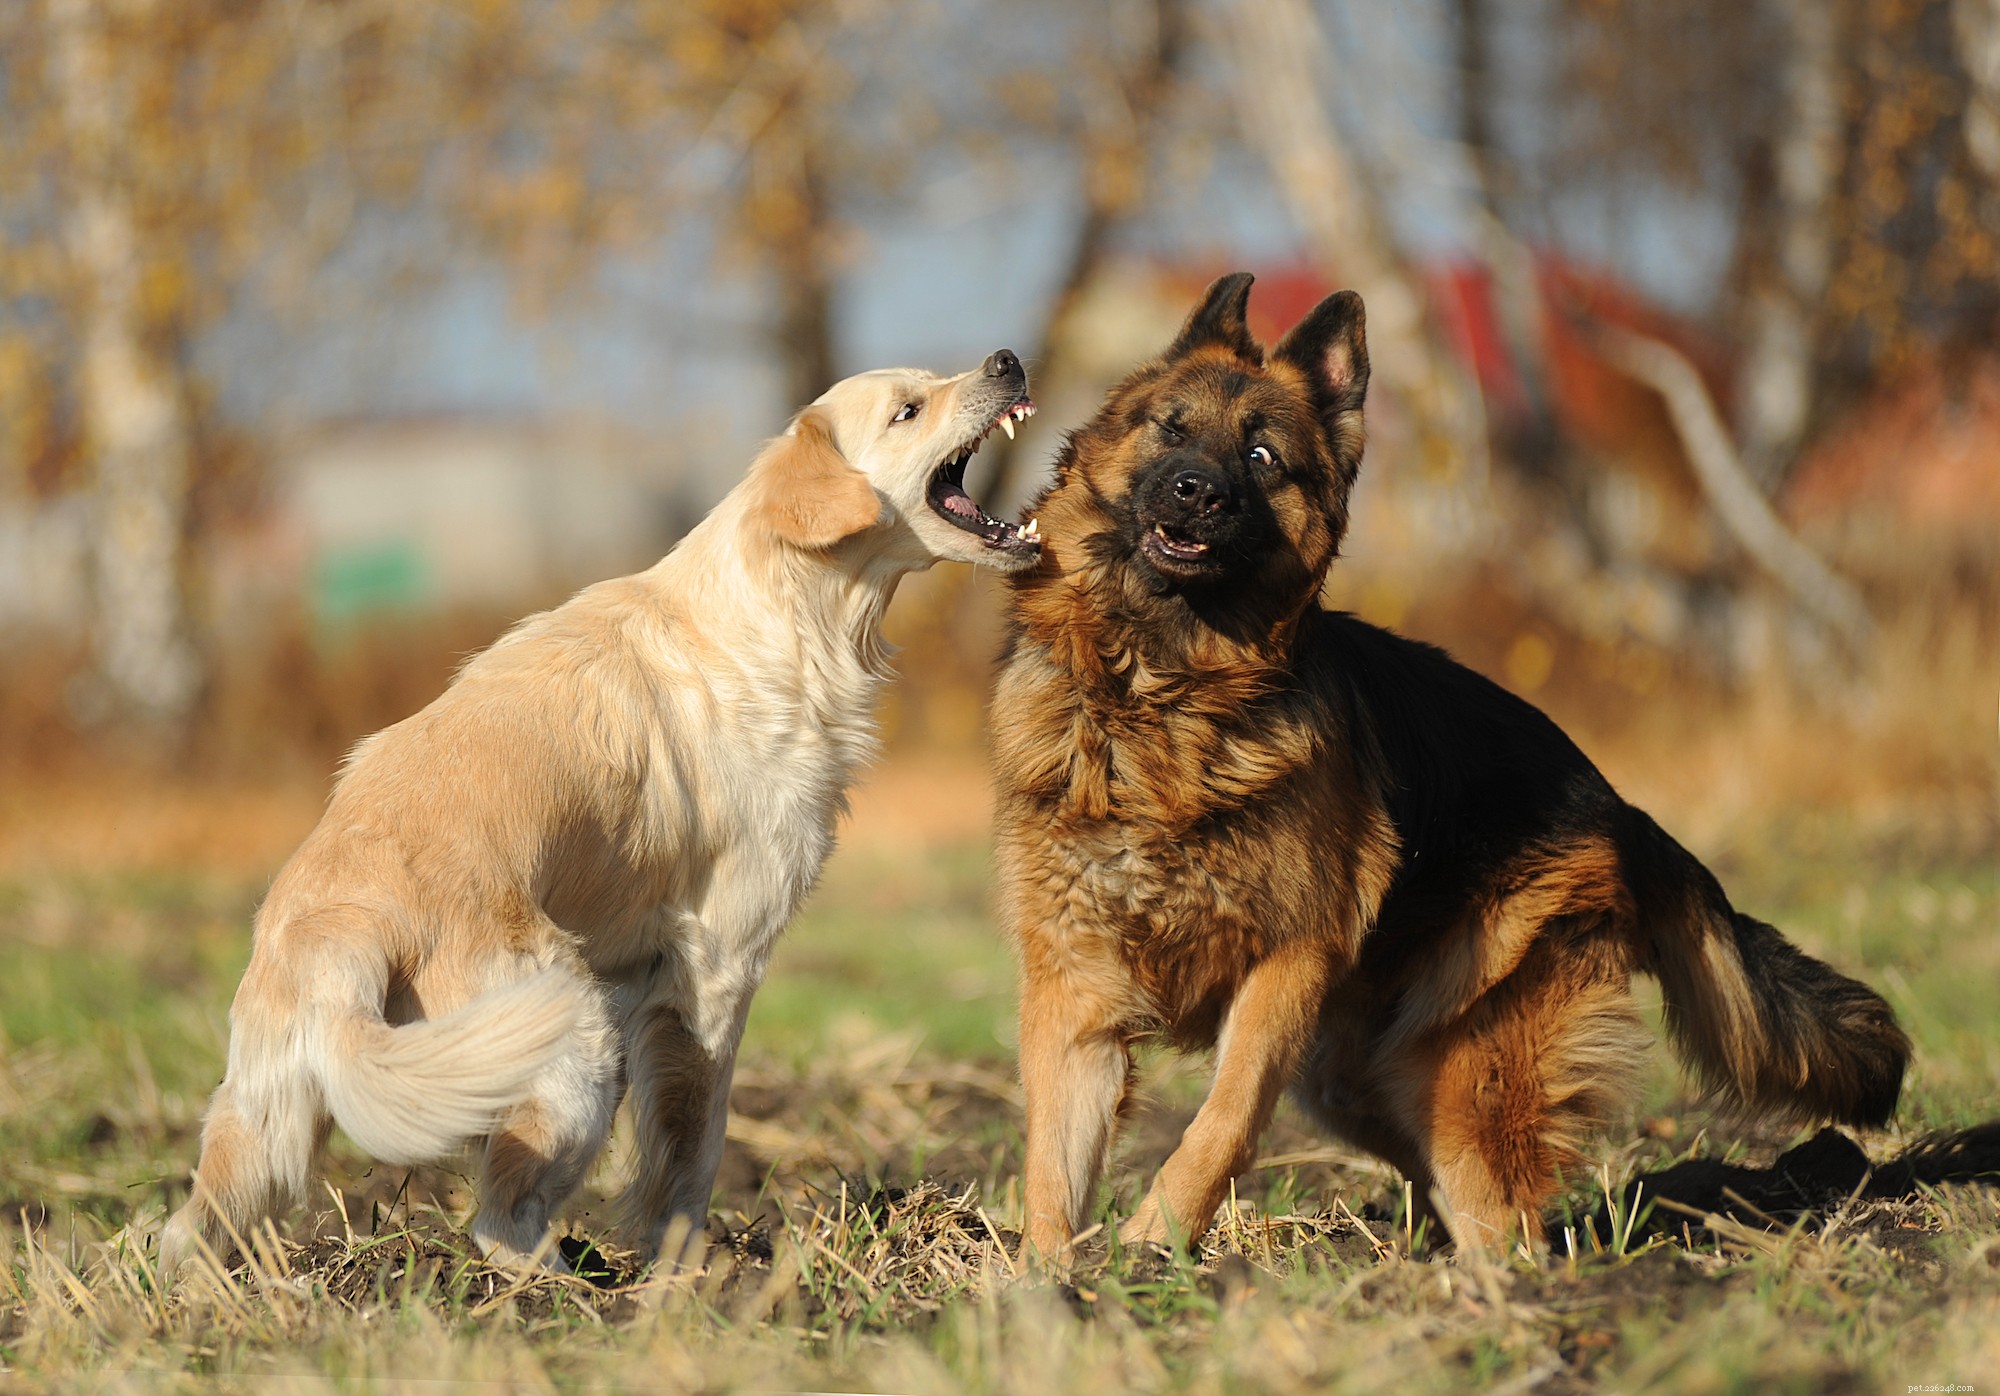 강아지 주인을 위한 예절:모범적인 개-인간 듀오가 되는 방법